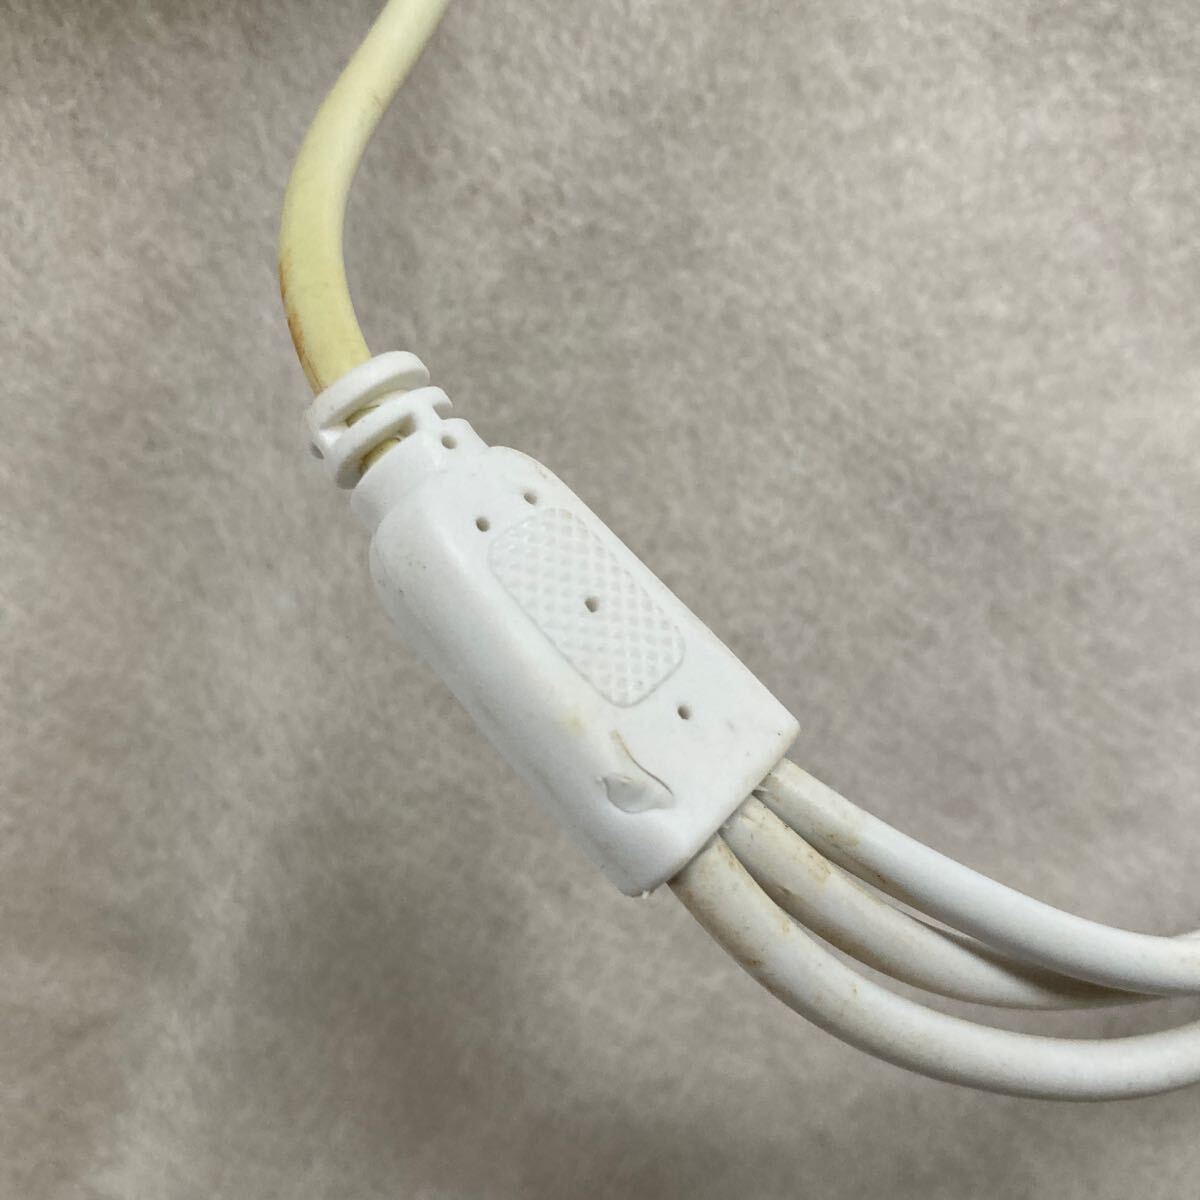 RCA удлинение кабель 20m 2 система RCA пин кабель мужской - мужской & источник питания имеется изображение звук видео удлинитель электропроводка комплект разделение камера системы безопасности белый 